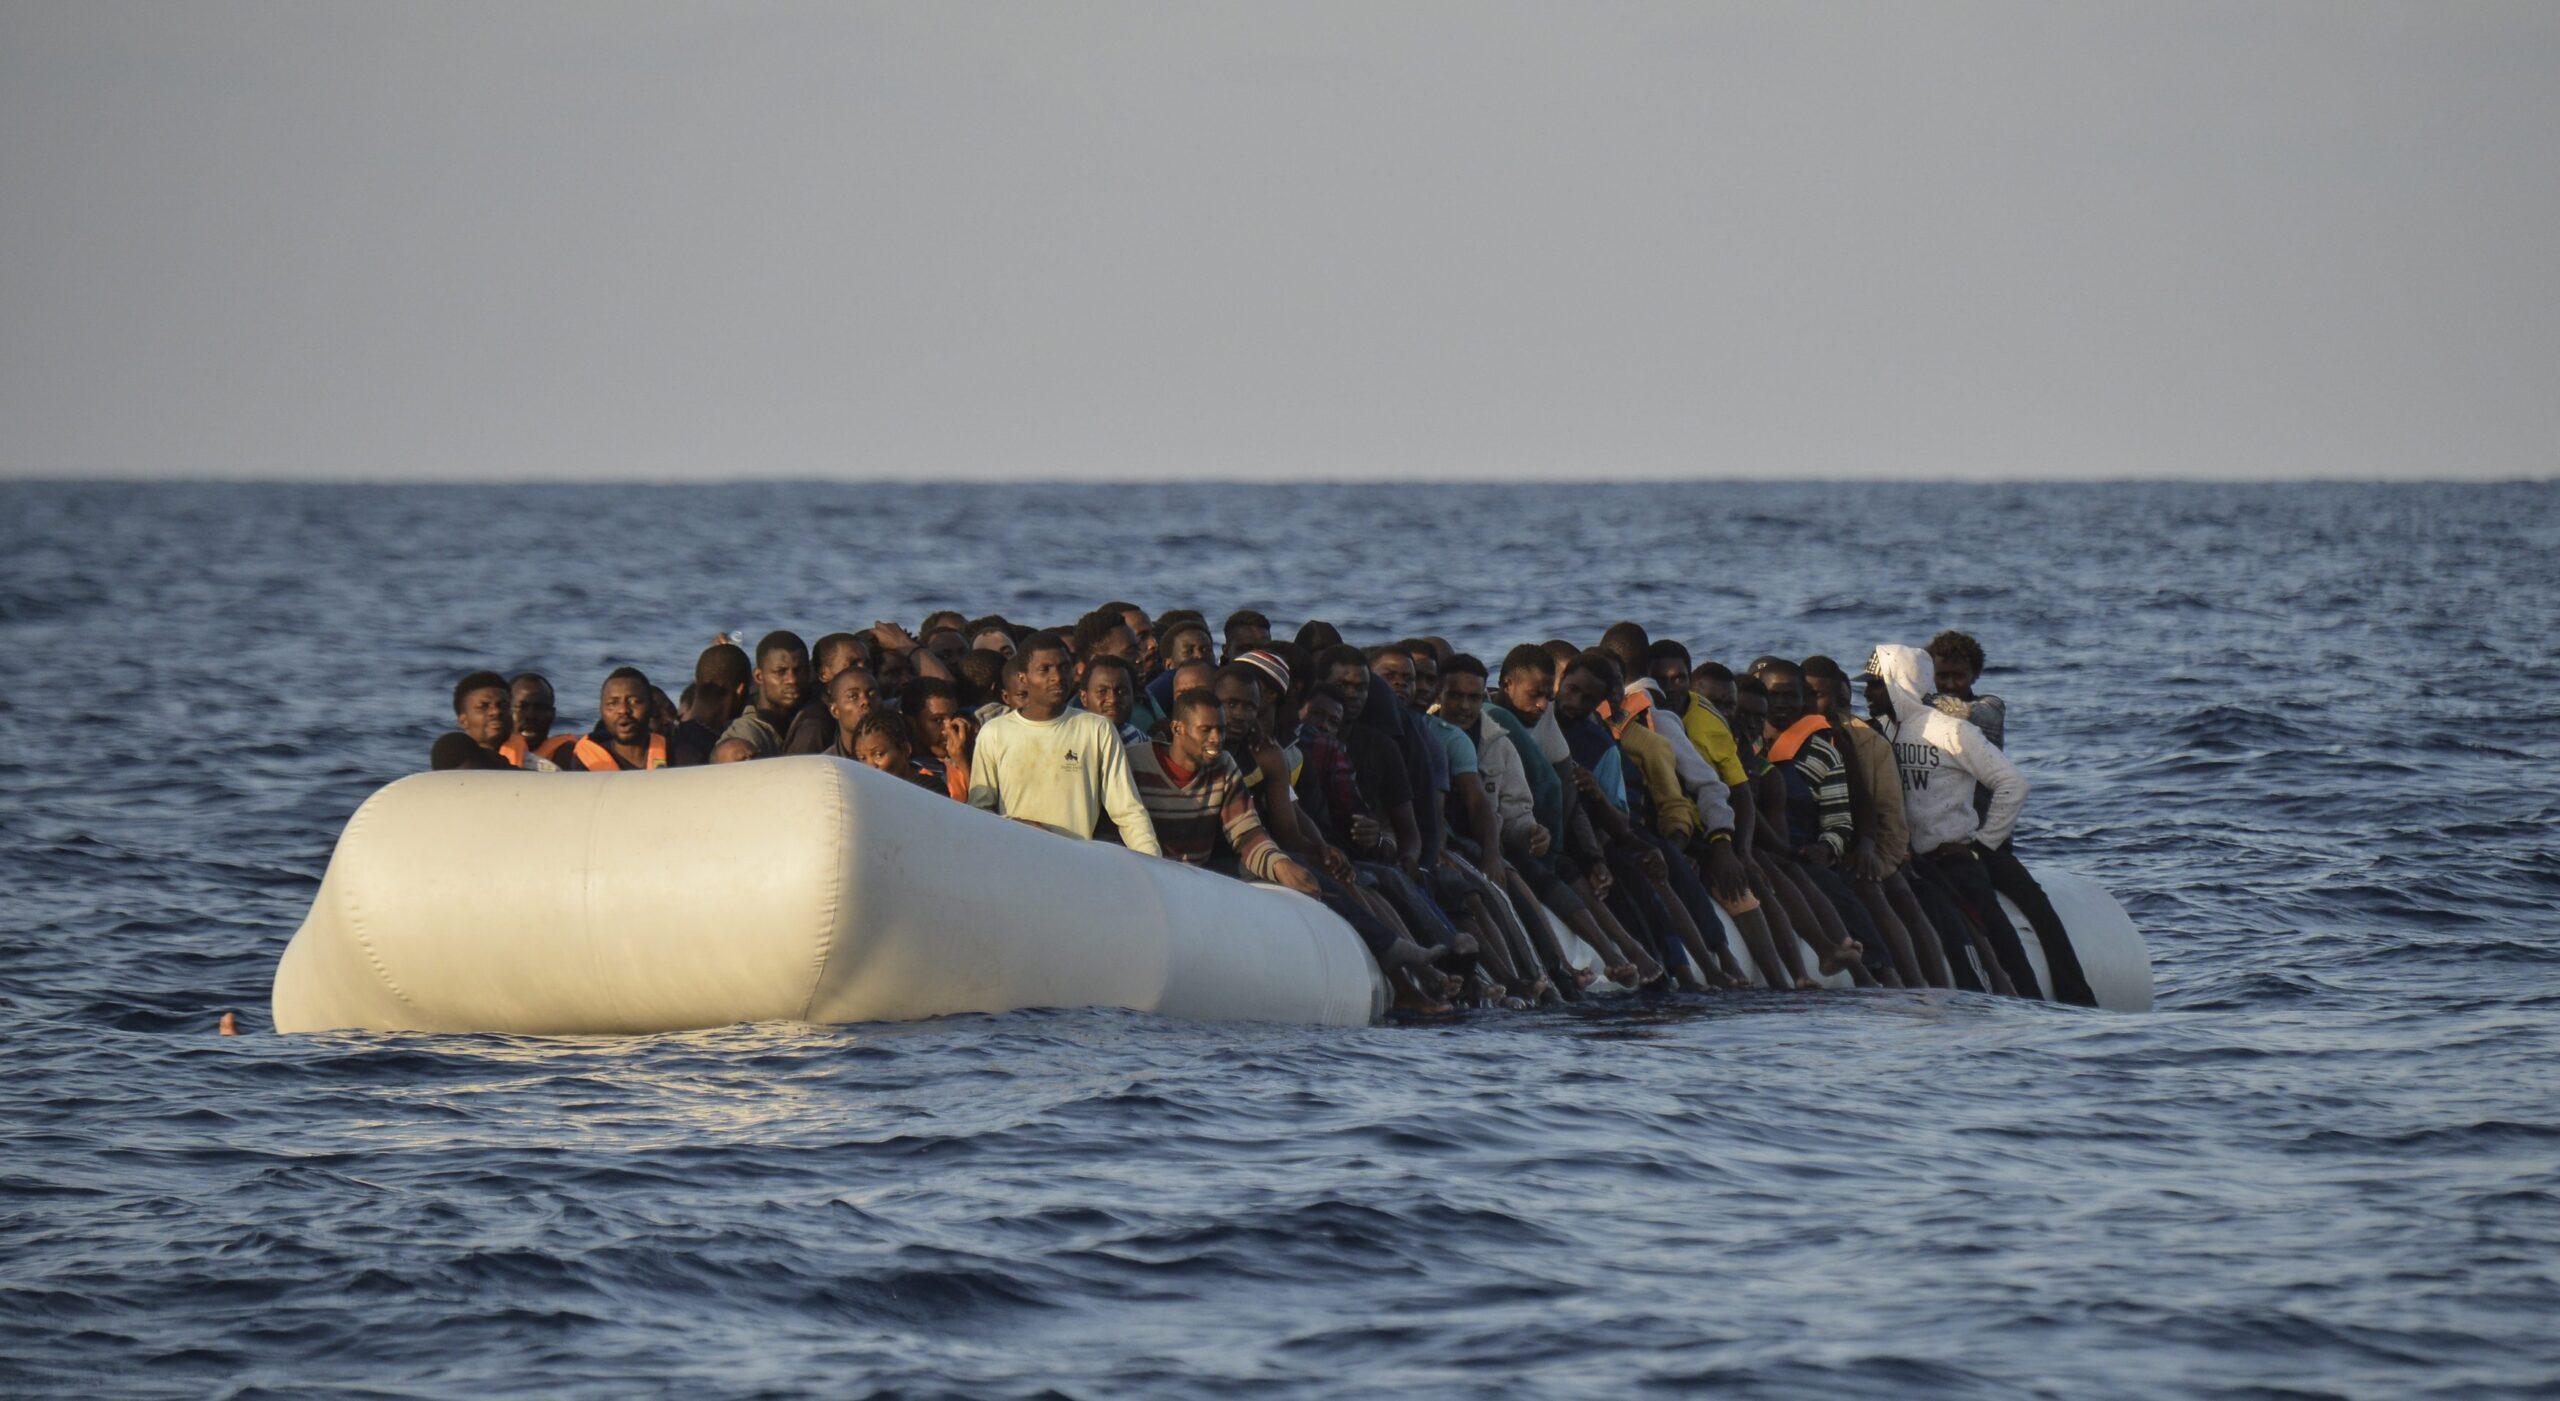 Refugiados esperaron horas por ayuda en naufragio en el que murieron 268 personas, revela audio